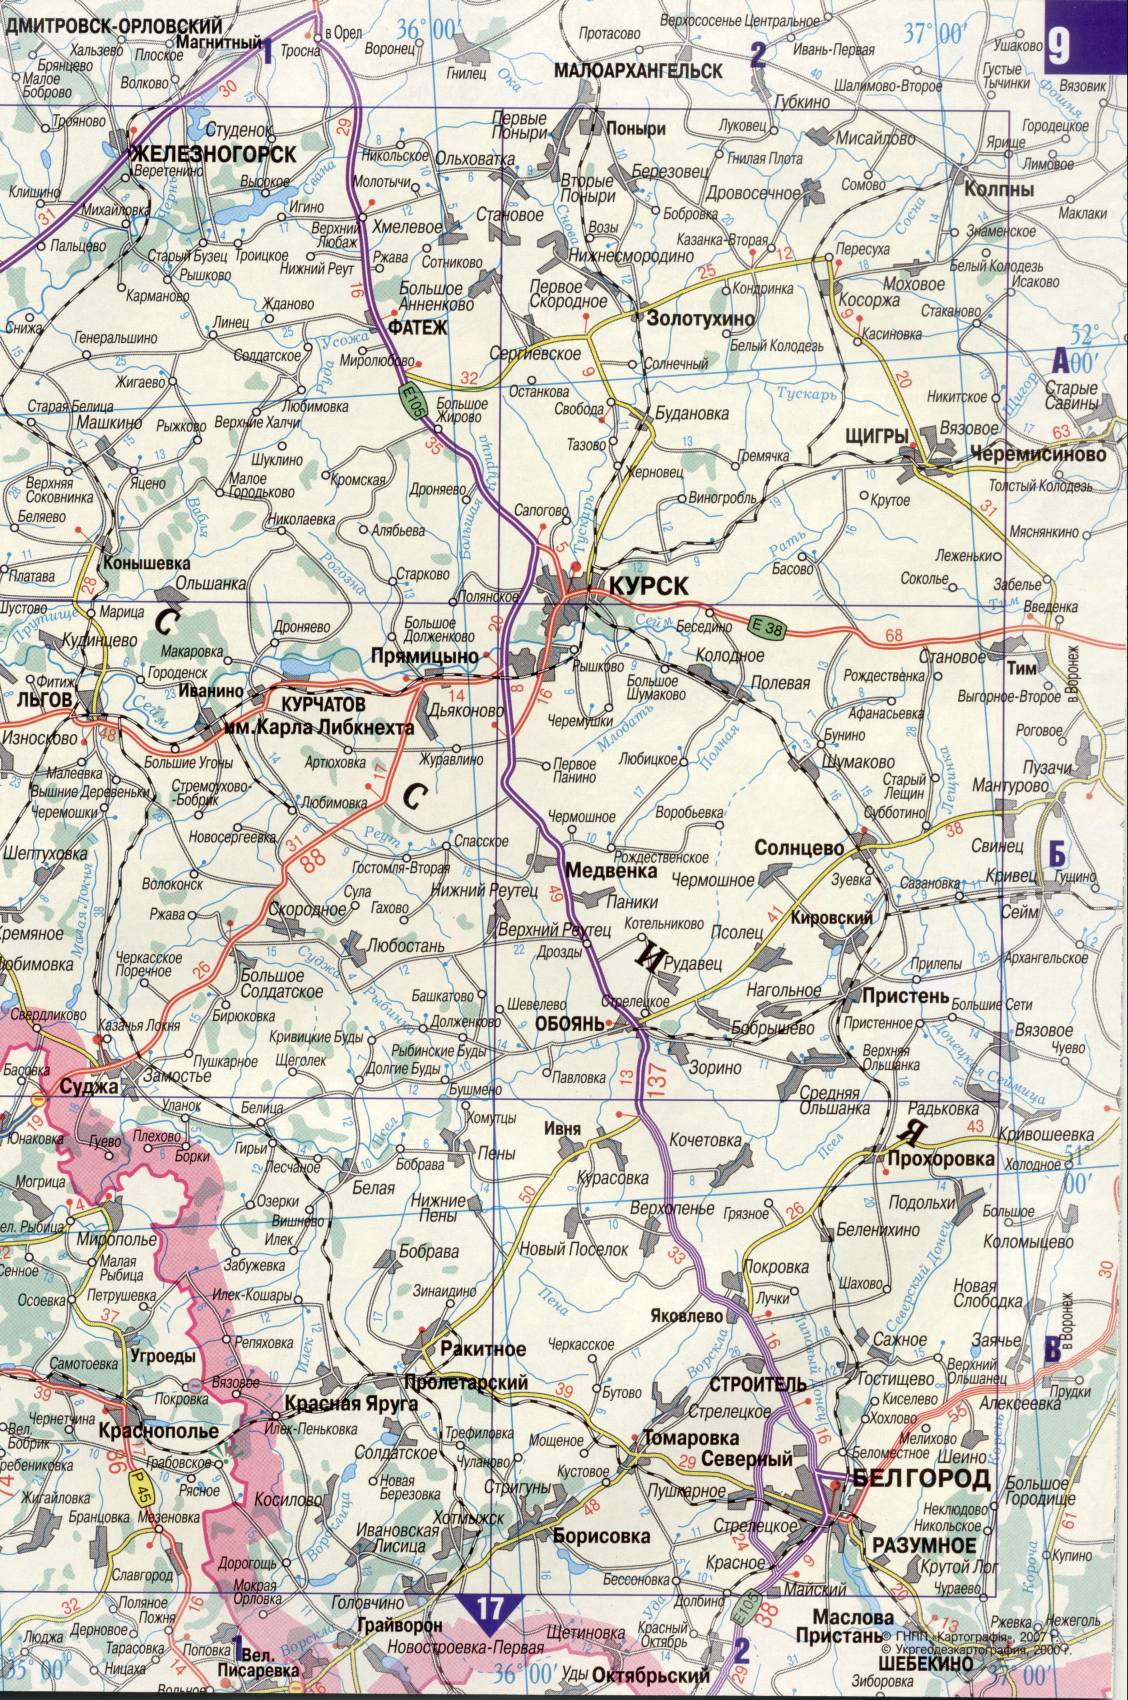 Carte de l'Ukraine. Détaillée carte routière de l'Ukraine de satin. télécharger gratuitement, H0